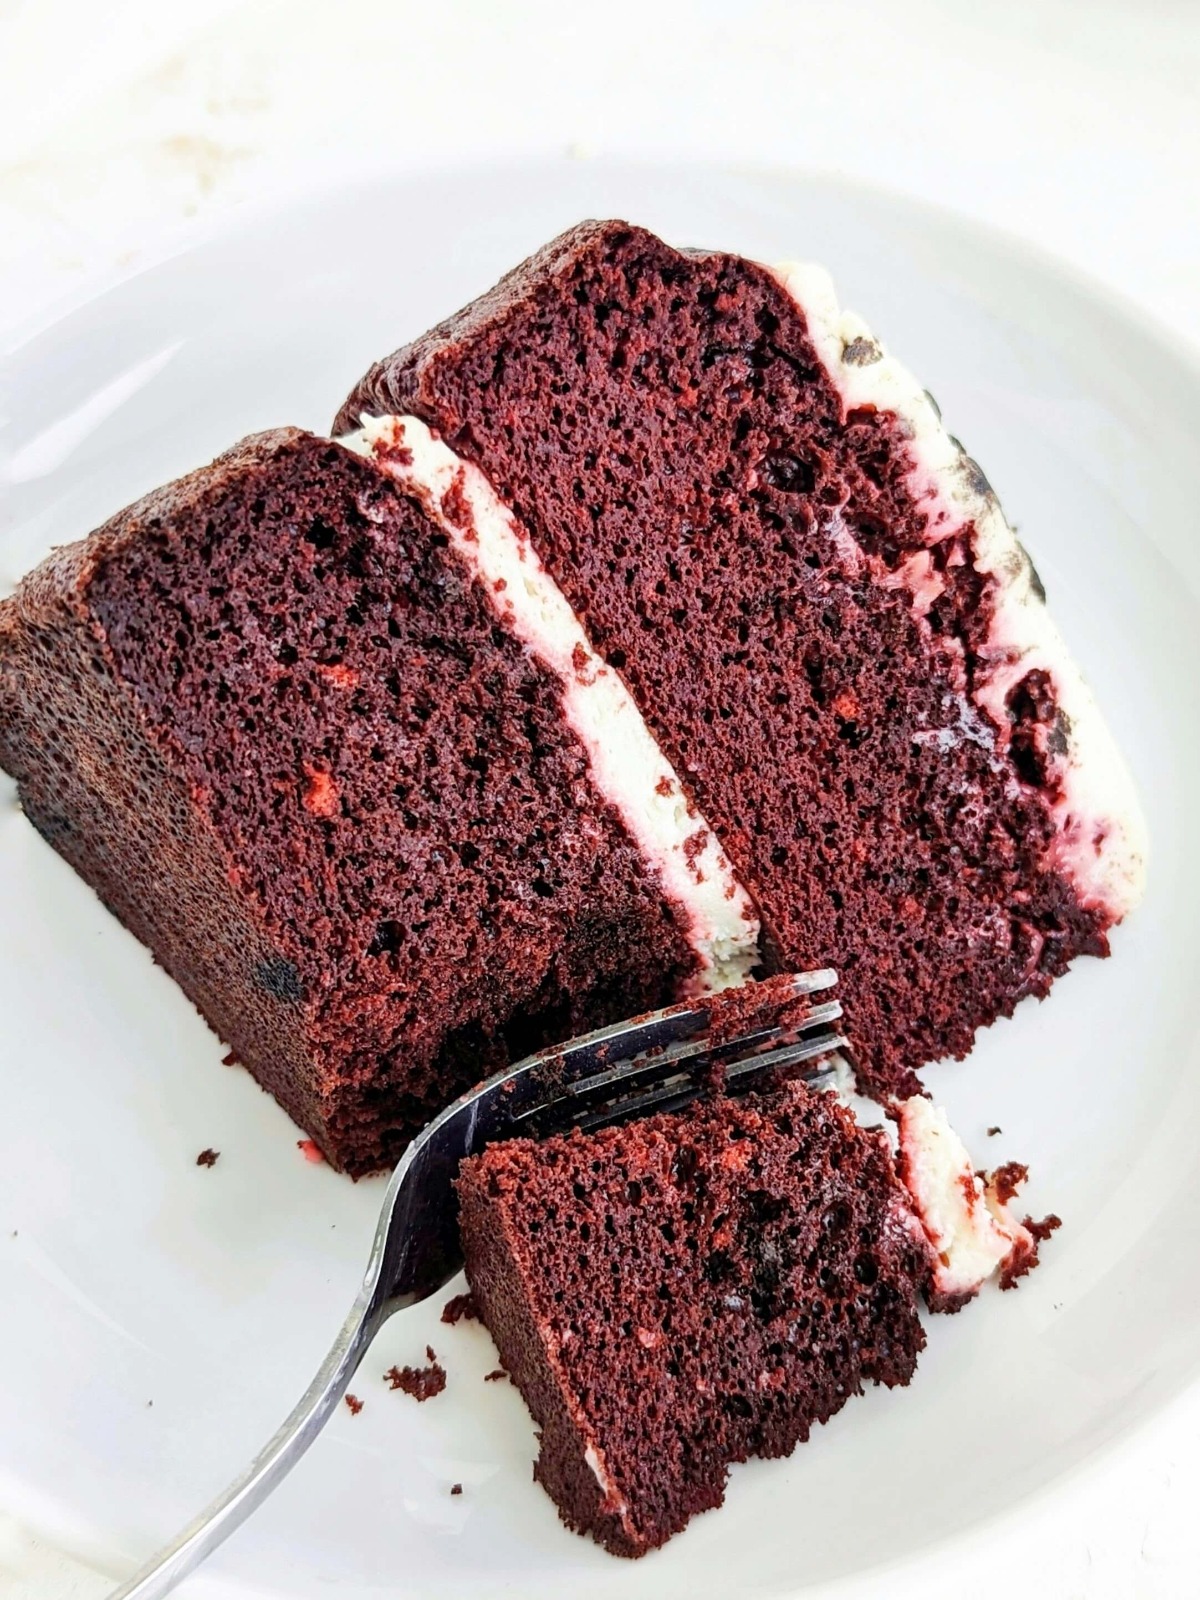 Classic Red Velvet Cake Recipe by Tasty